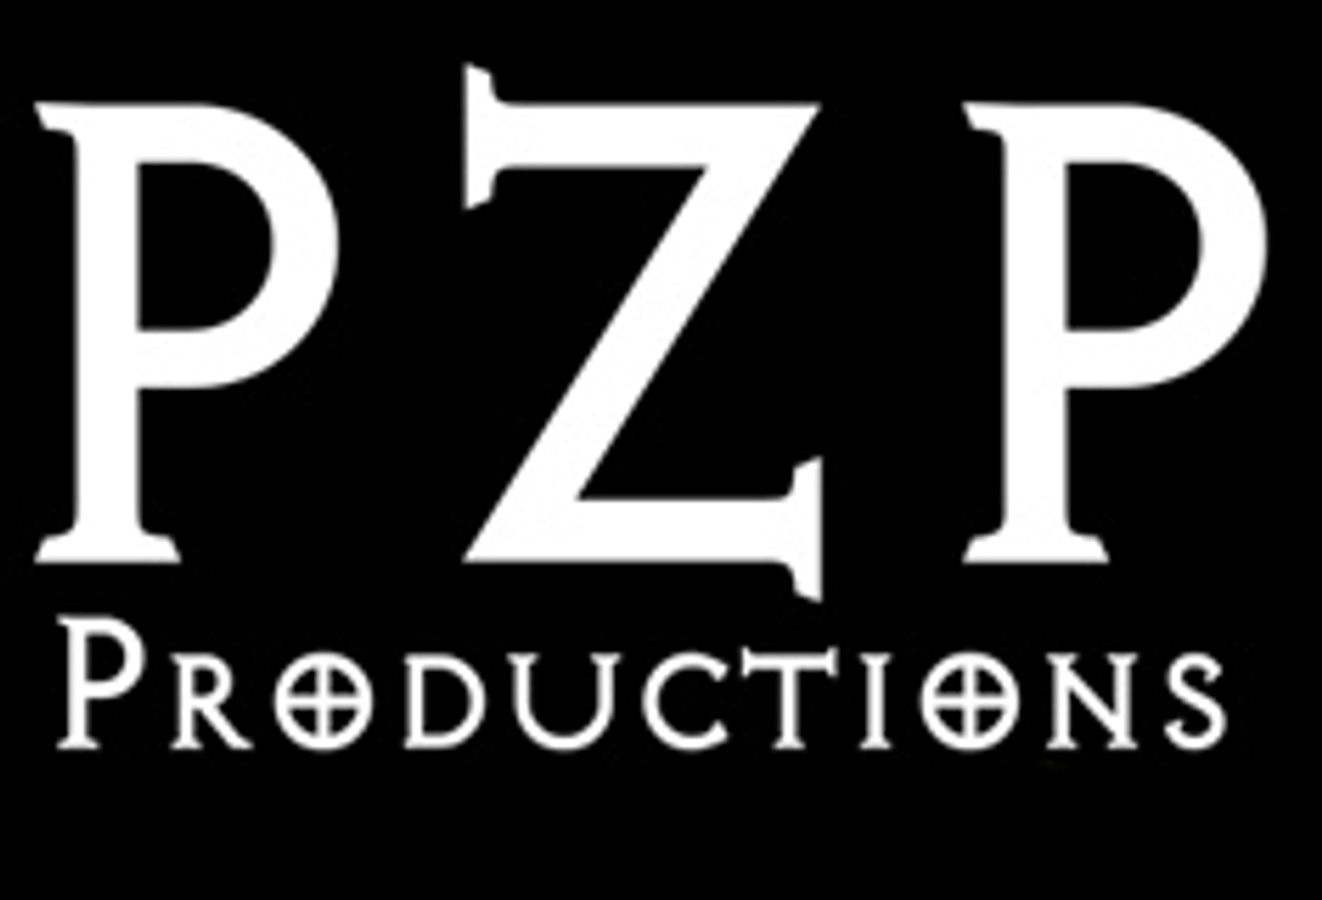 PZP Productions